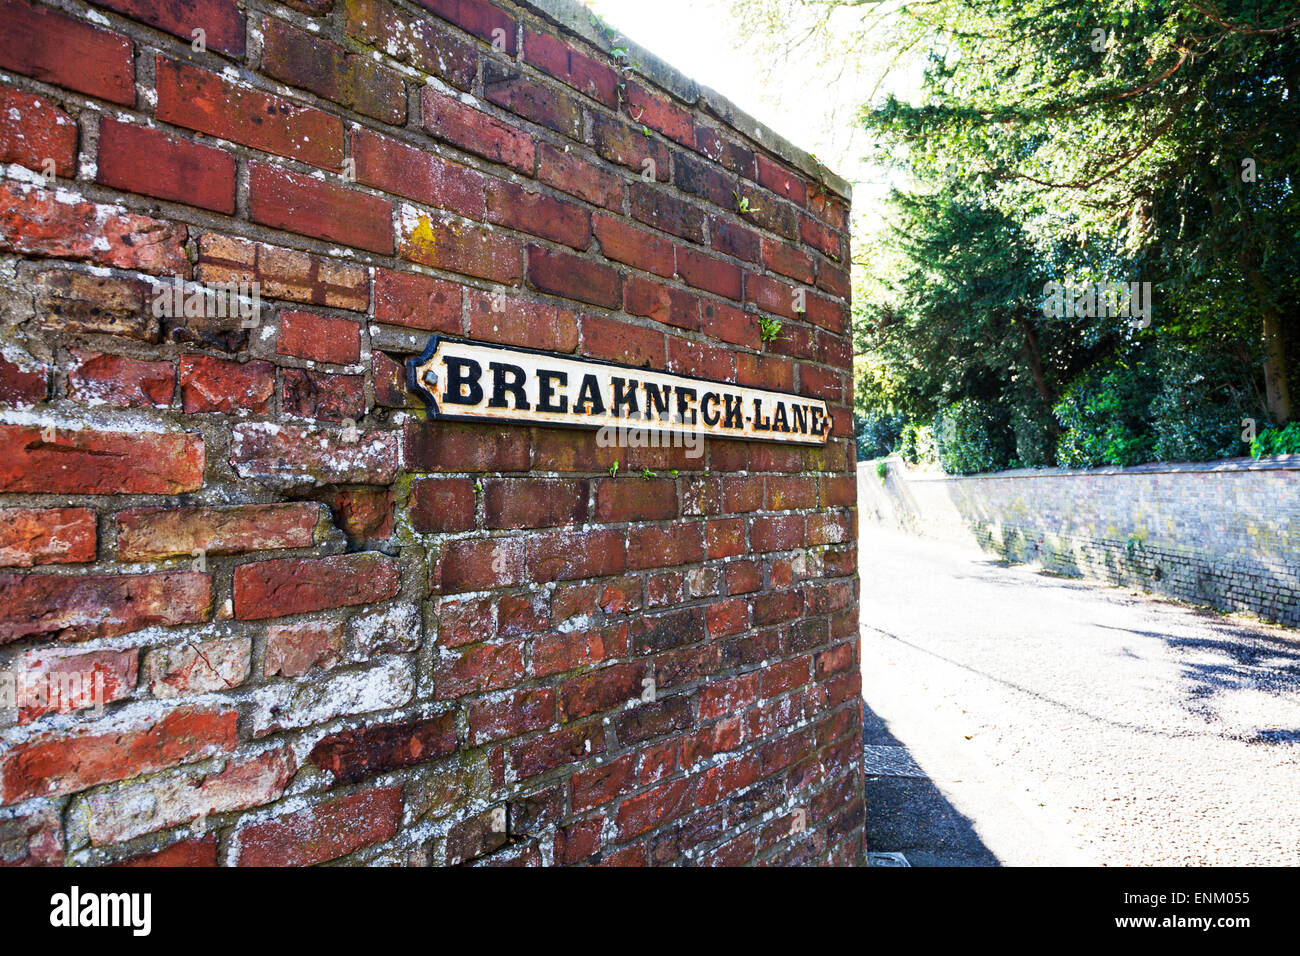 Strano strano insolito funny divertente strada nome sign segni "repentine Lane' Louth Lincolnshire UK Inghilterra Foto Stock